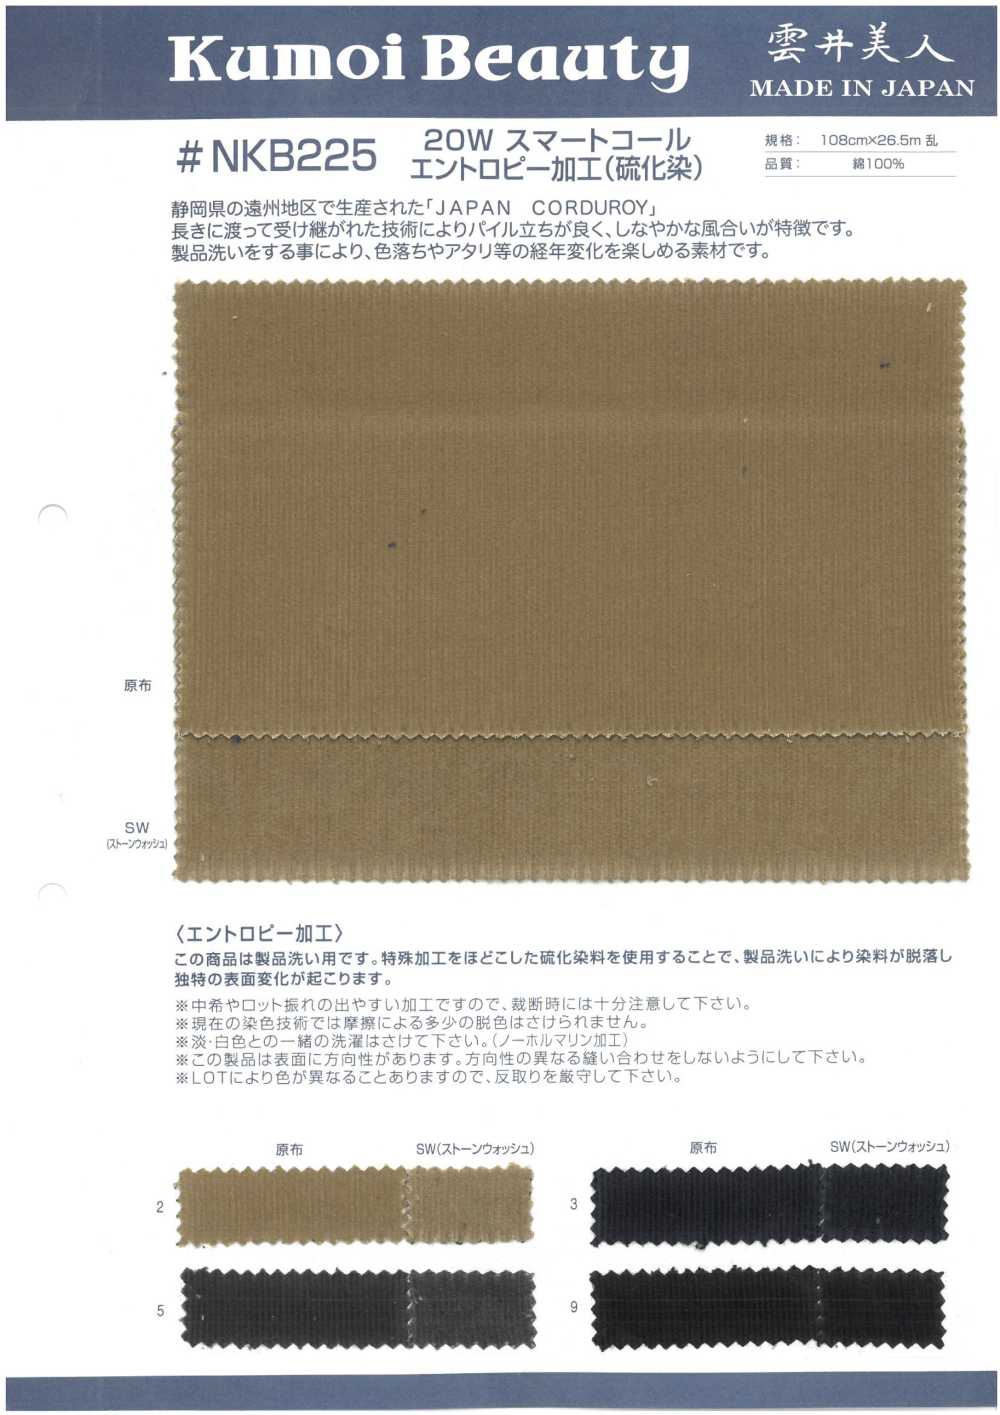 NKB225 Procesamiento De Entropía De Pana Inteligente De 20 W (Teñido De Sulfuro)[Fabrica Textil] Kumoi Beauty (Pana De Terciopelo Chubu)